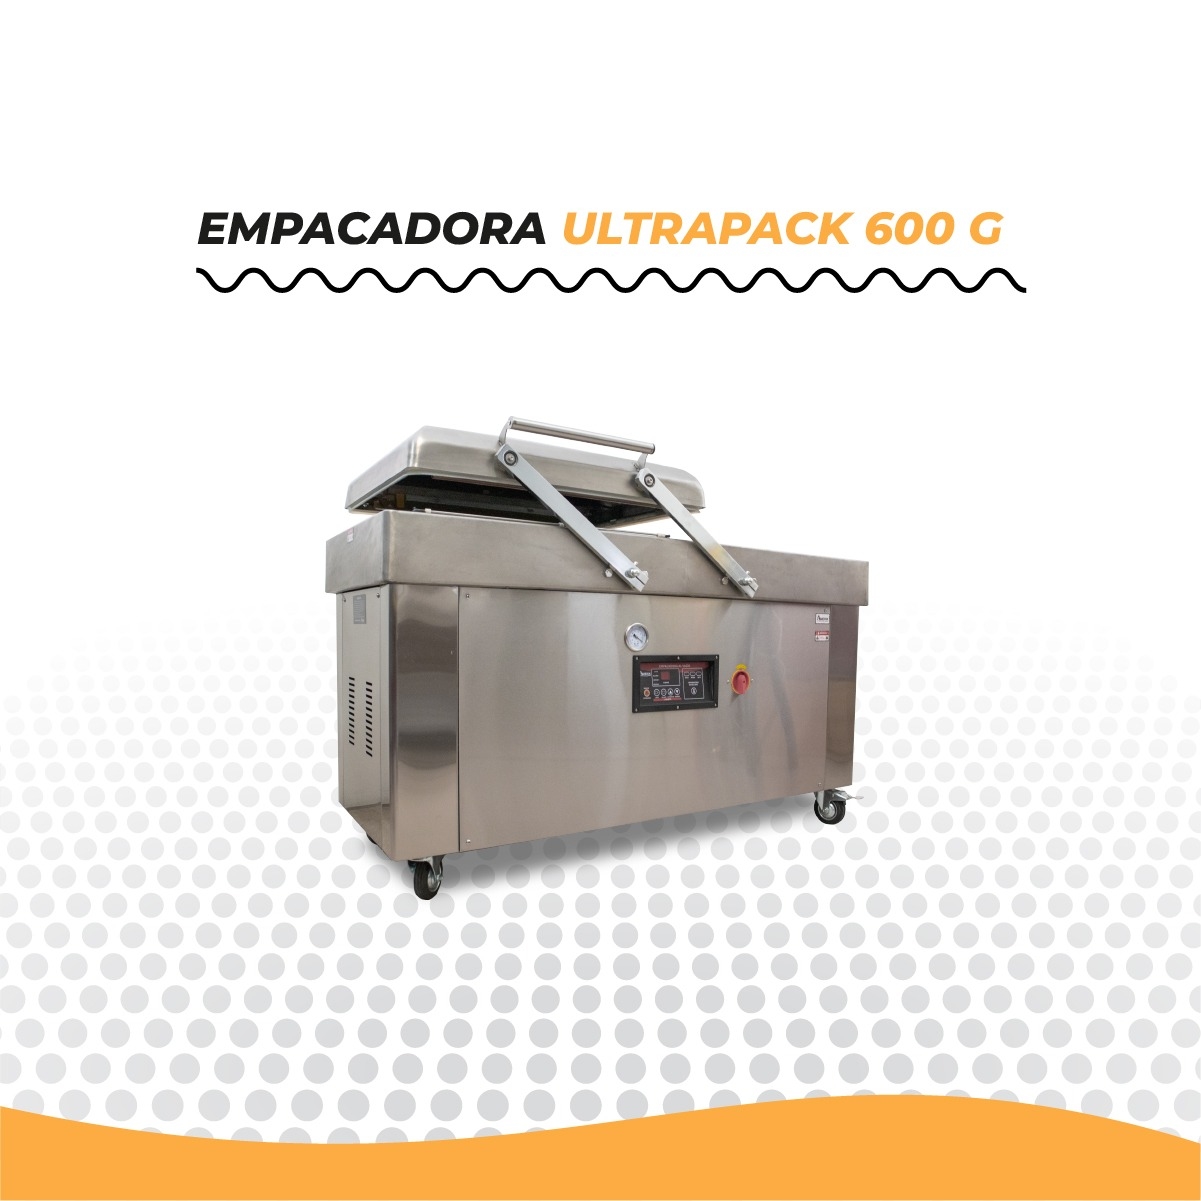 ULTRAPACK 600G EMPACADORA AL VACIO CON INYECCION DE GAS INERTE